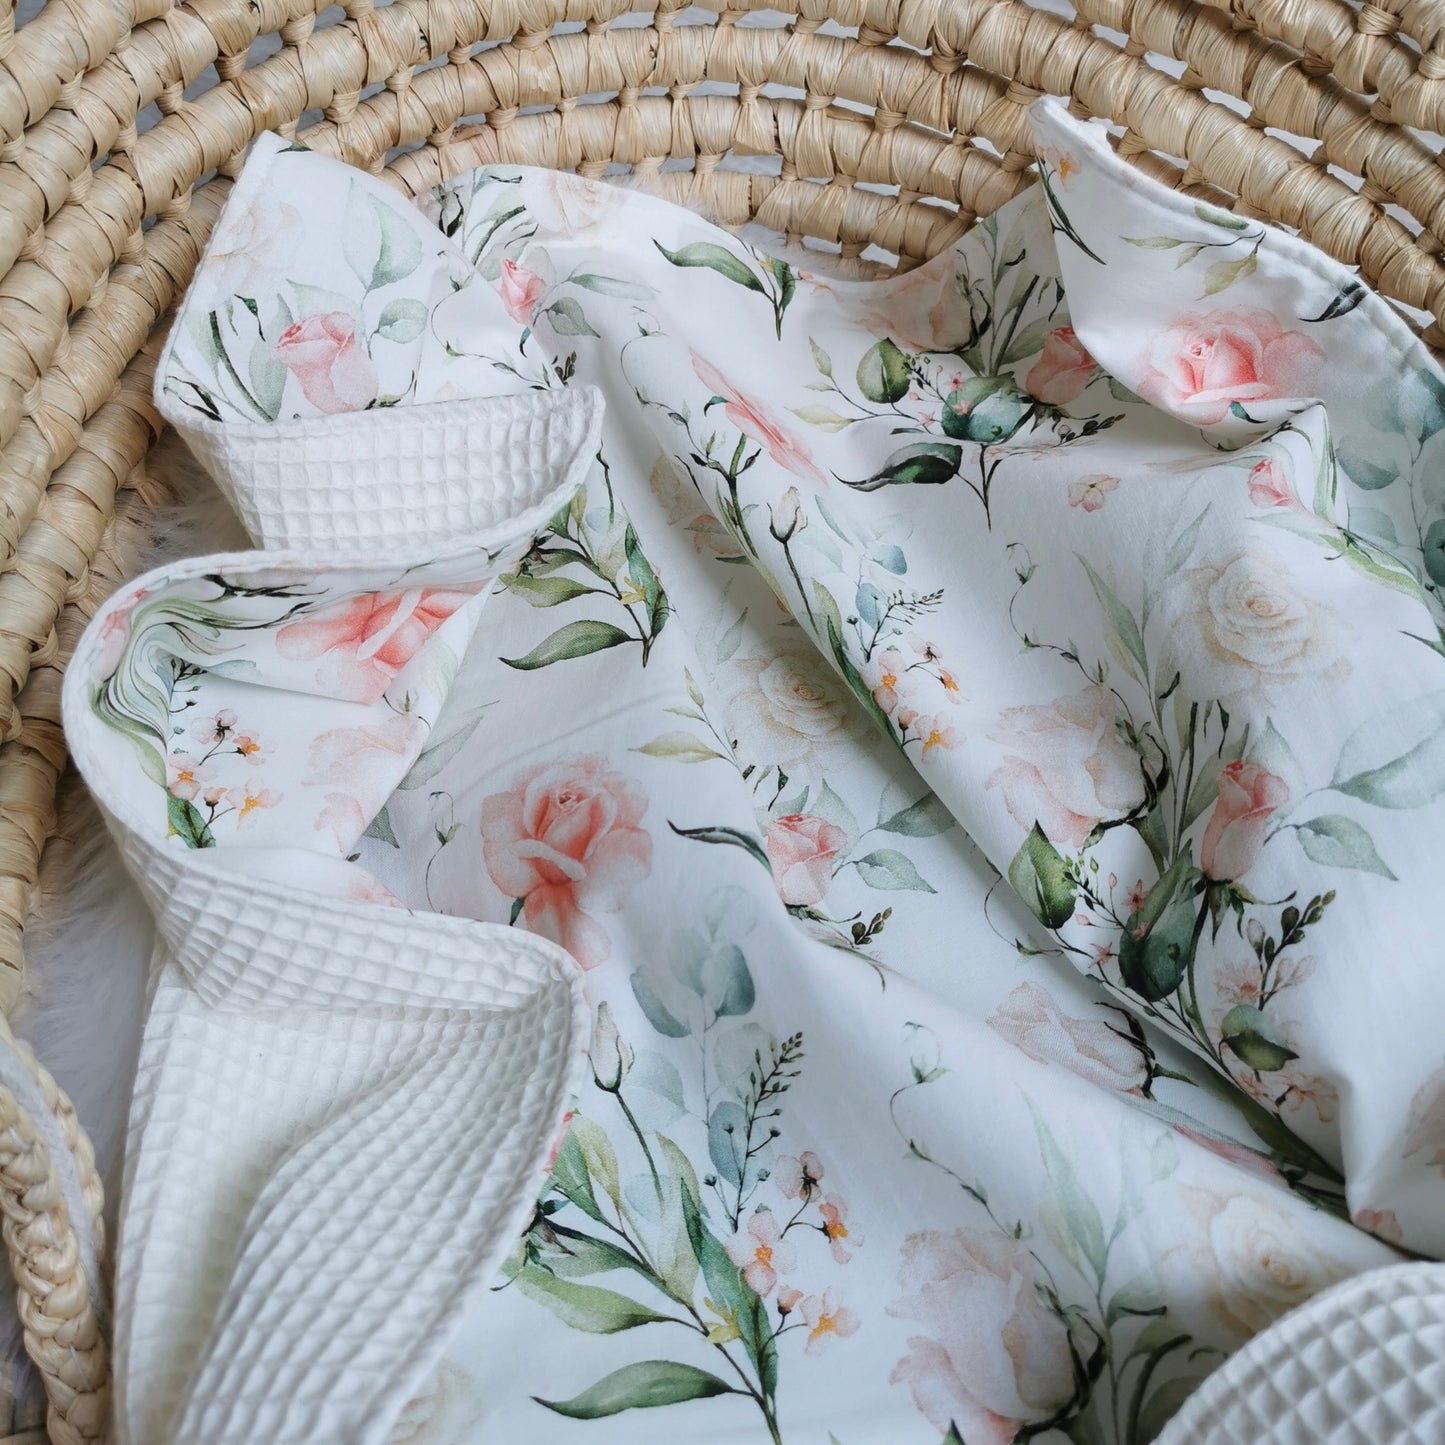 Baby Blanket “Watercolor Roses”